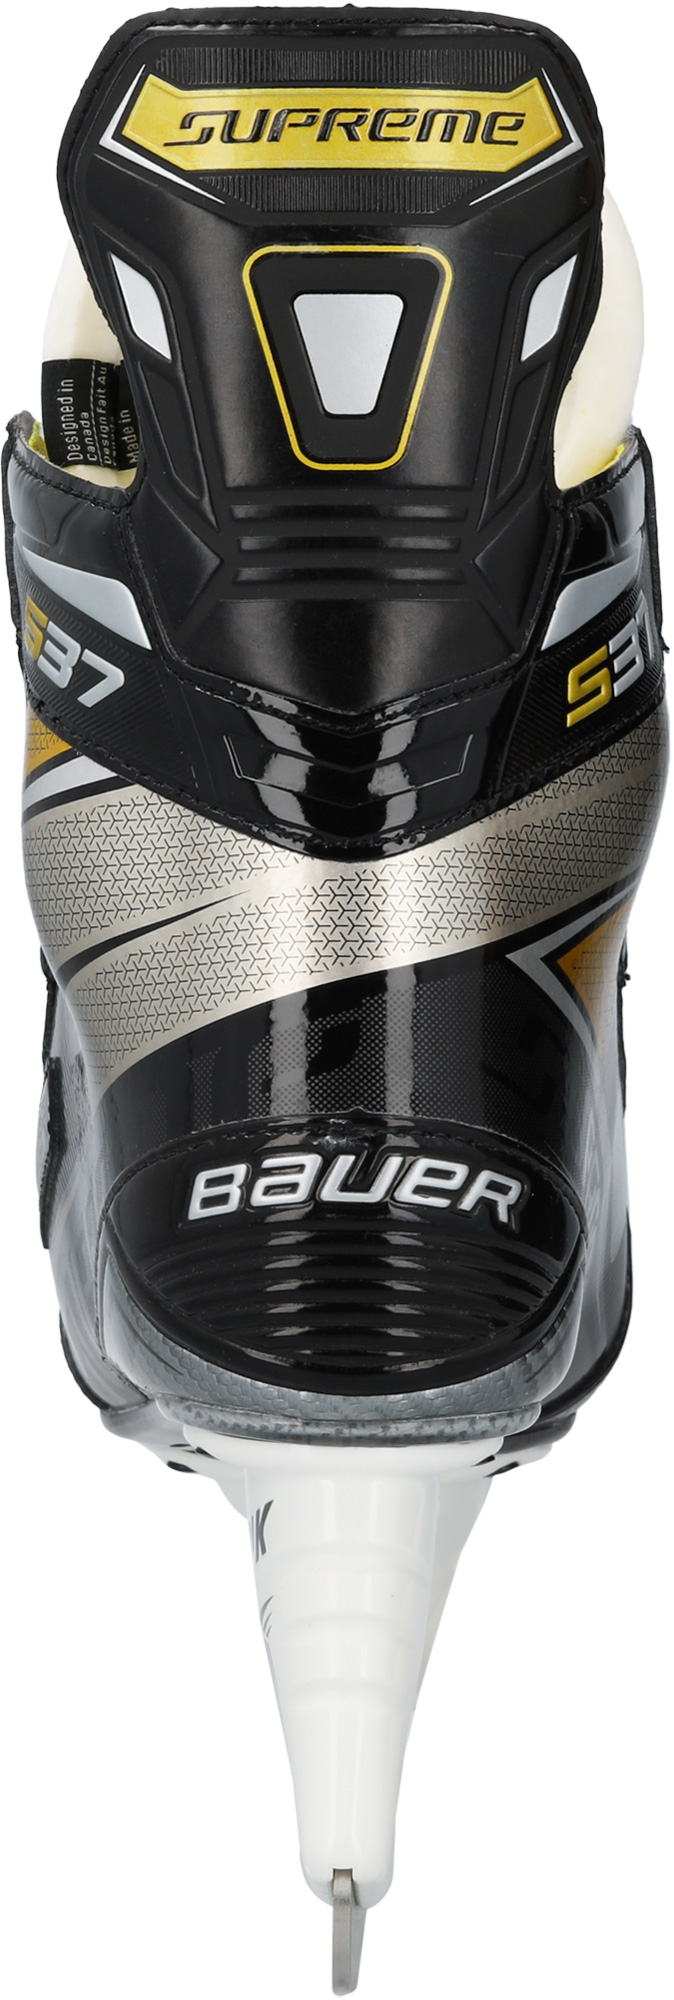 Коньки хоккейные BAUER Supreme S37 S20 SR взрослые(9,5 SR / EE/9,5)